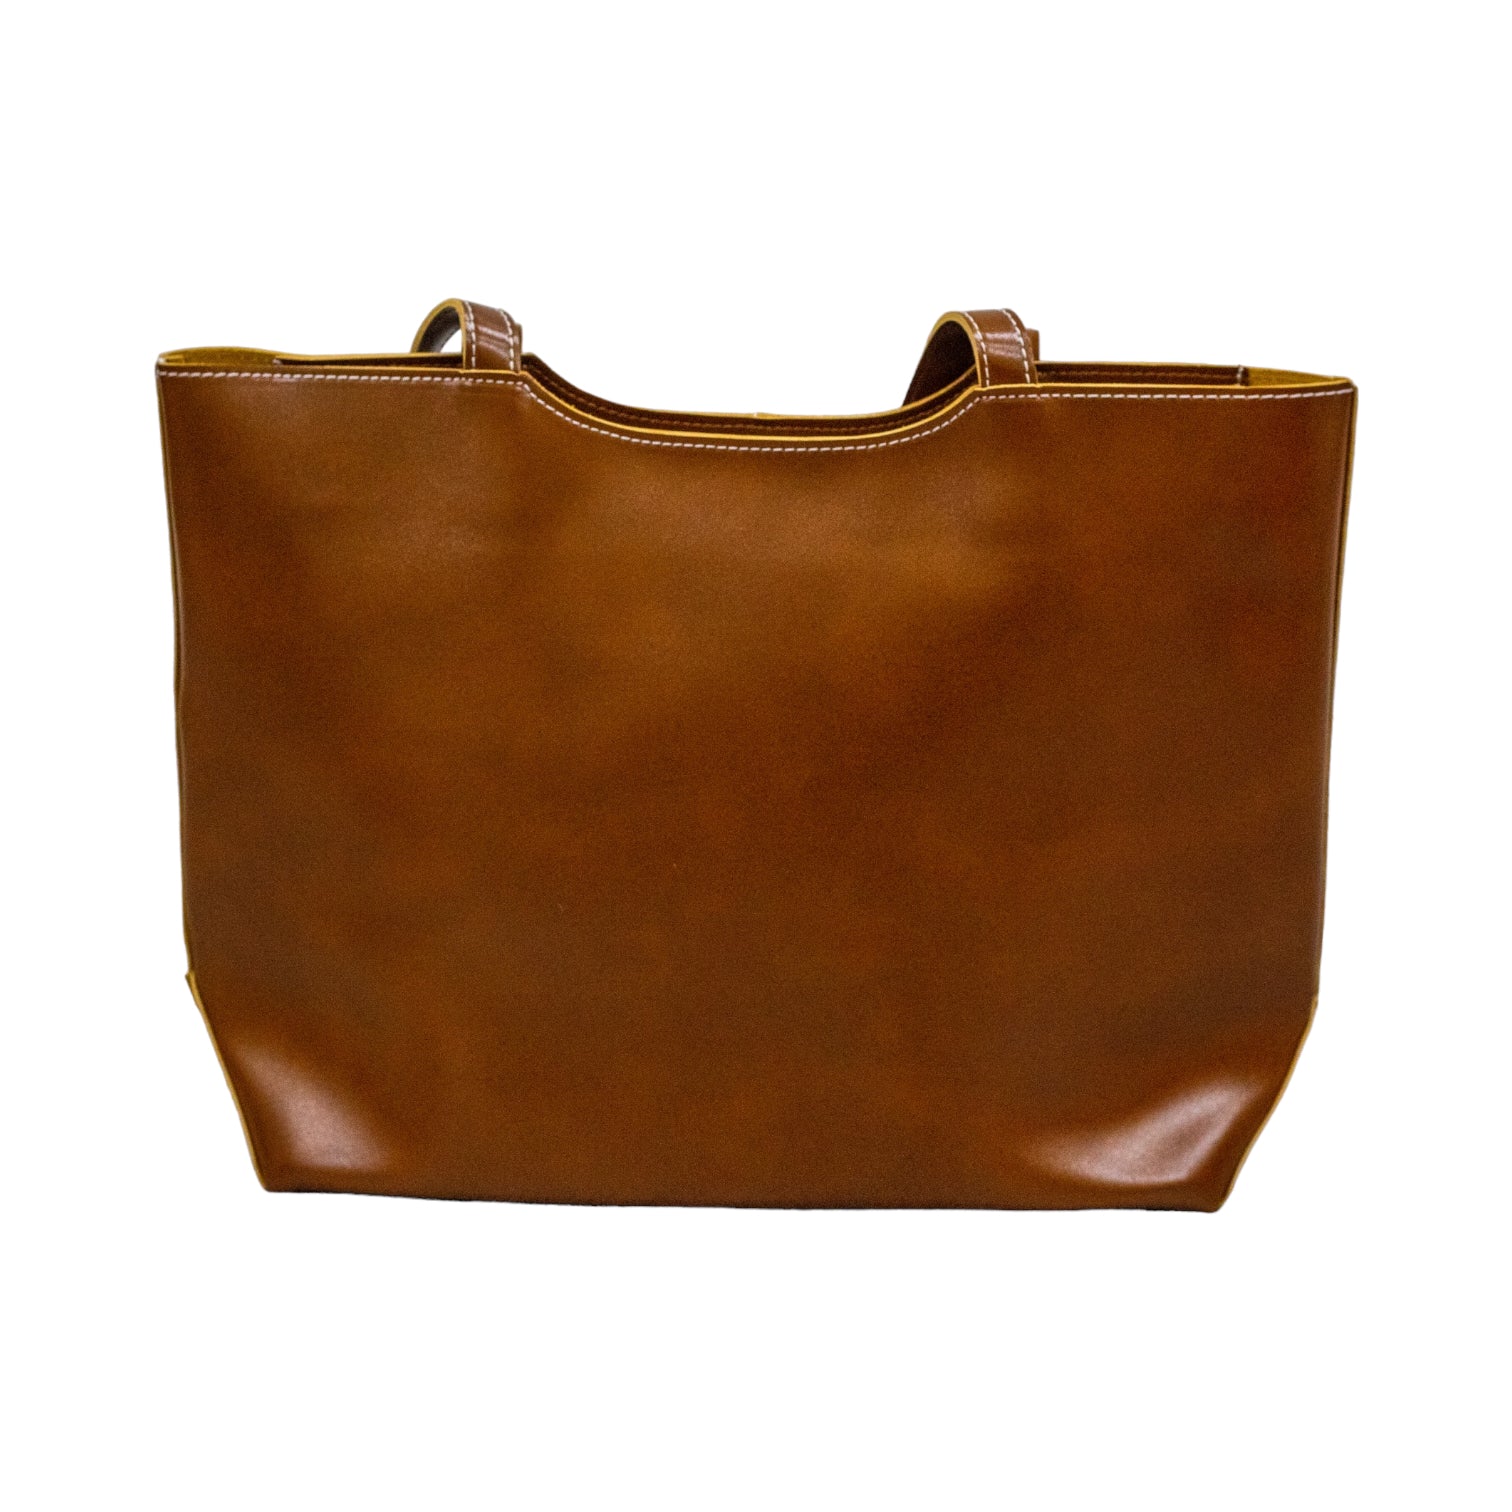 Grazia faux leather tote bag brown